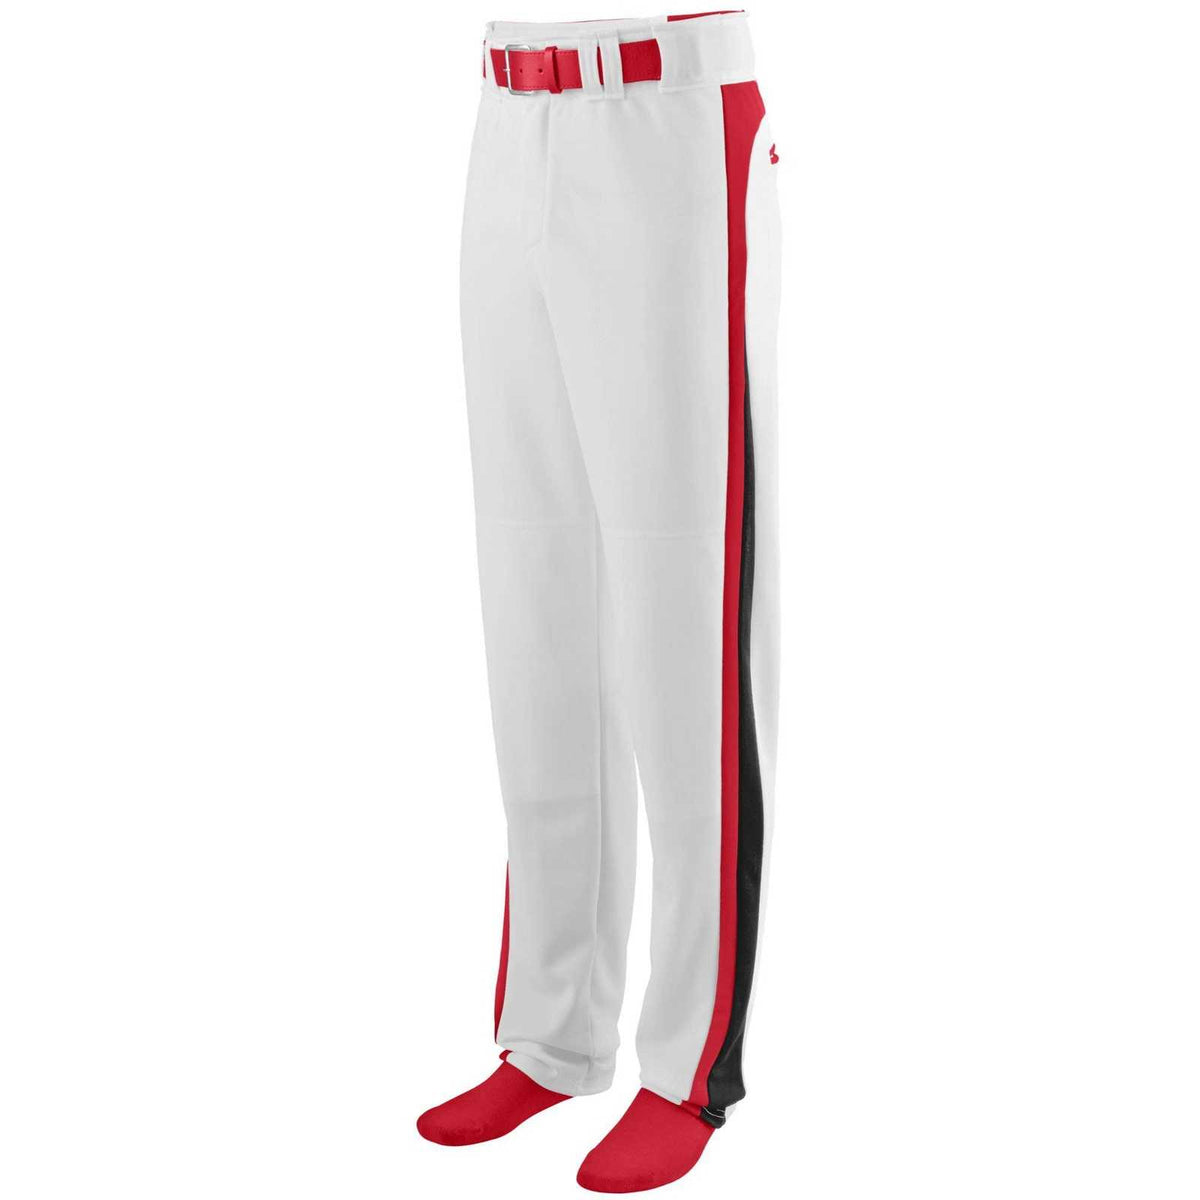 Augusta 1477 Slider Baseball Softball Pant - White Red Black - HIT a Double - 1